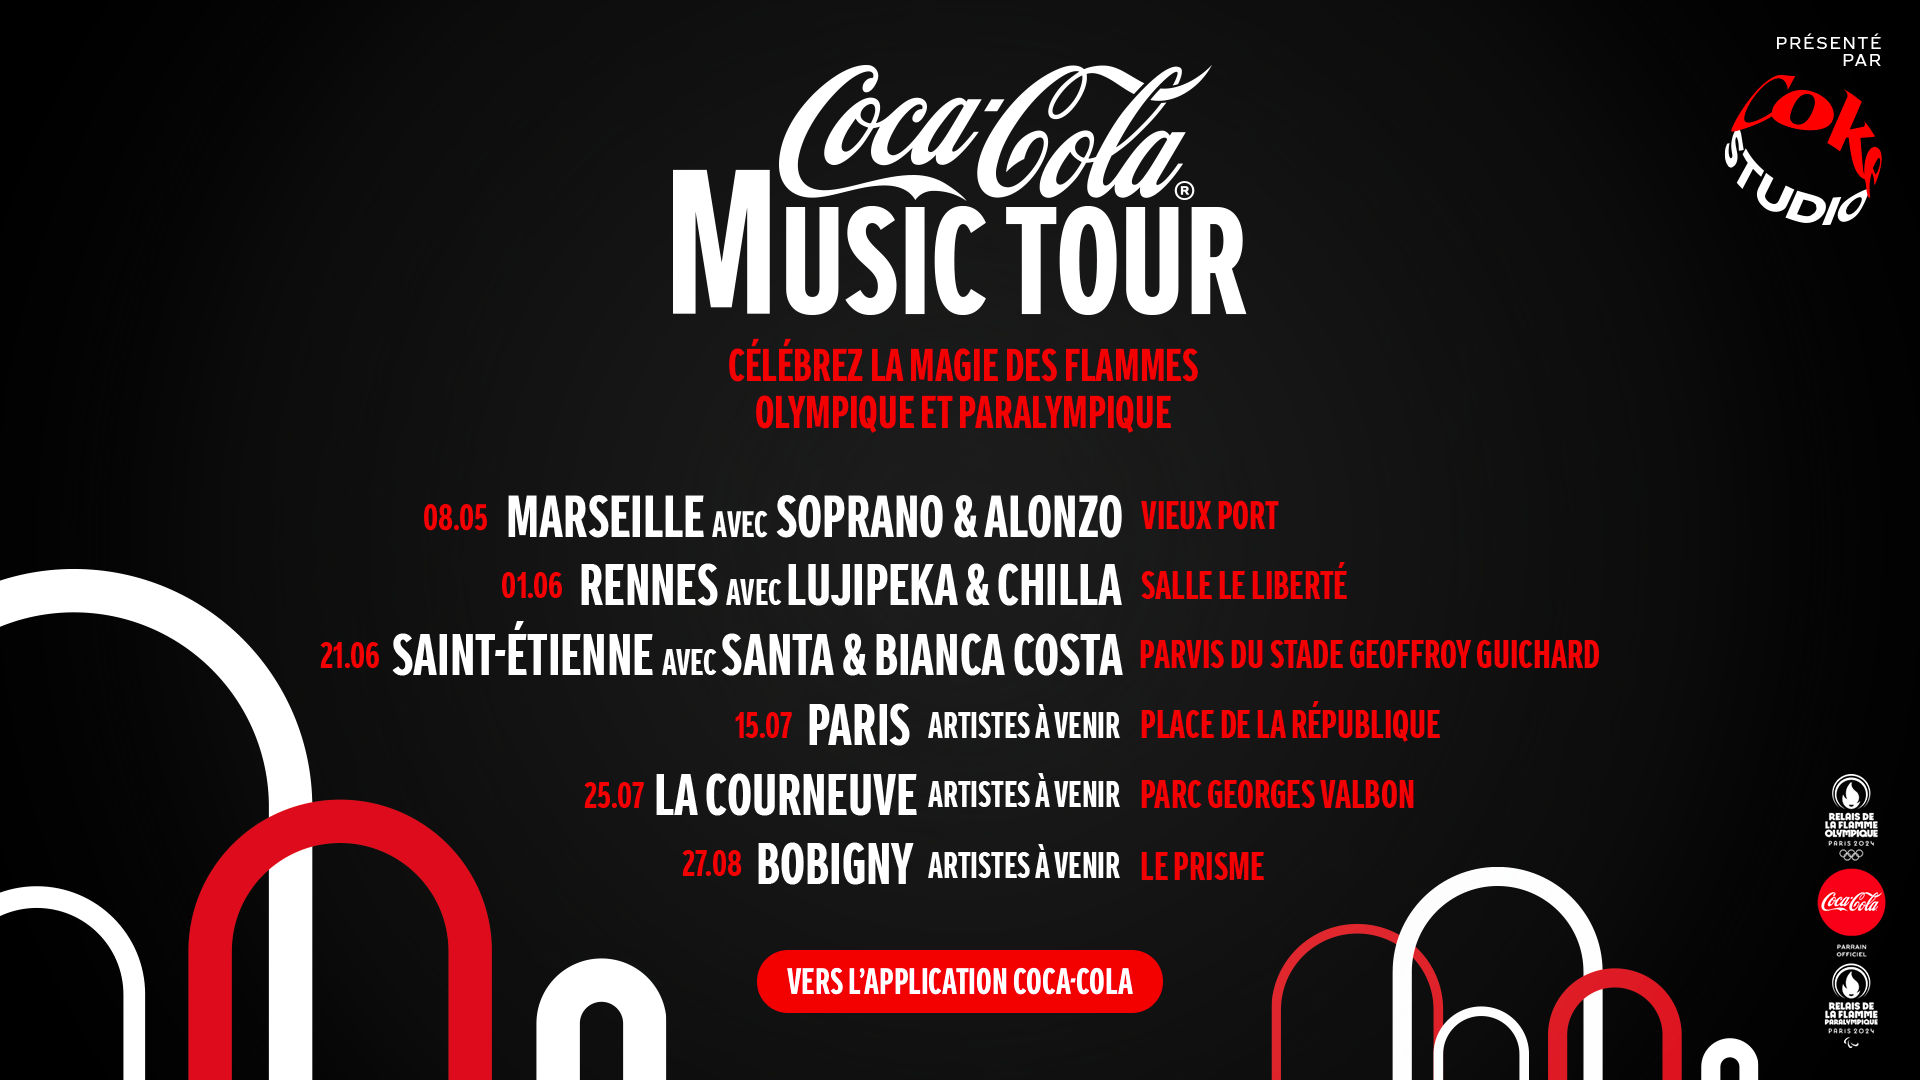 Coca-Cola Music Tour